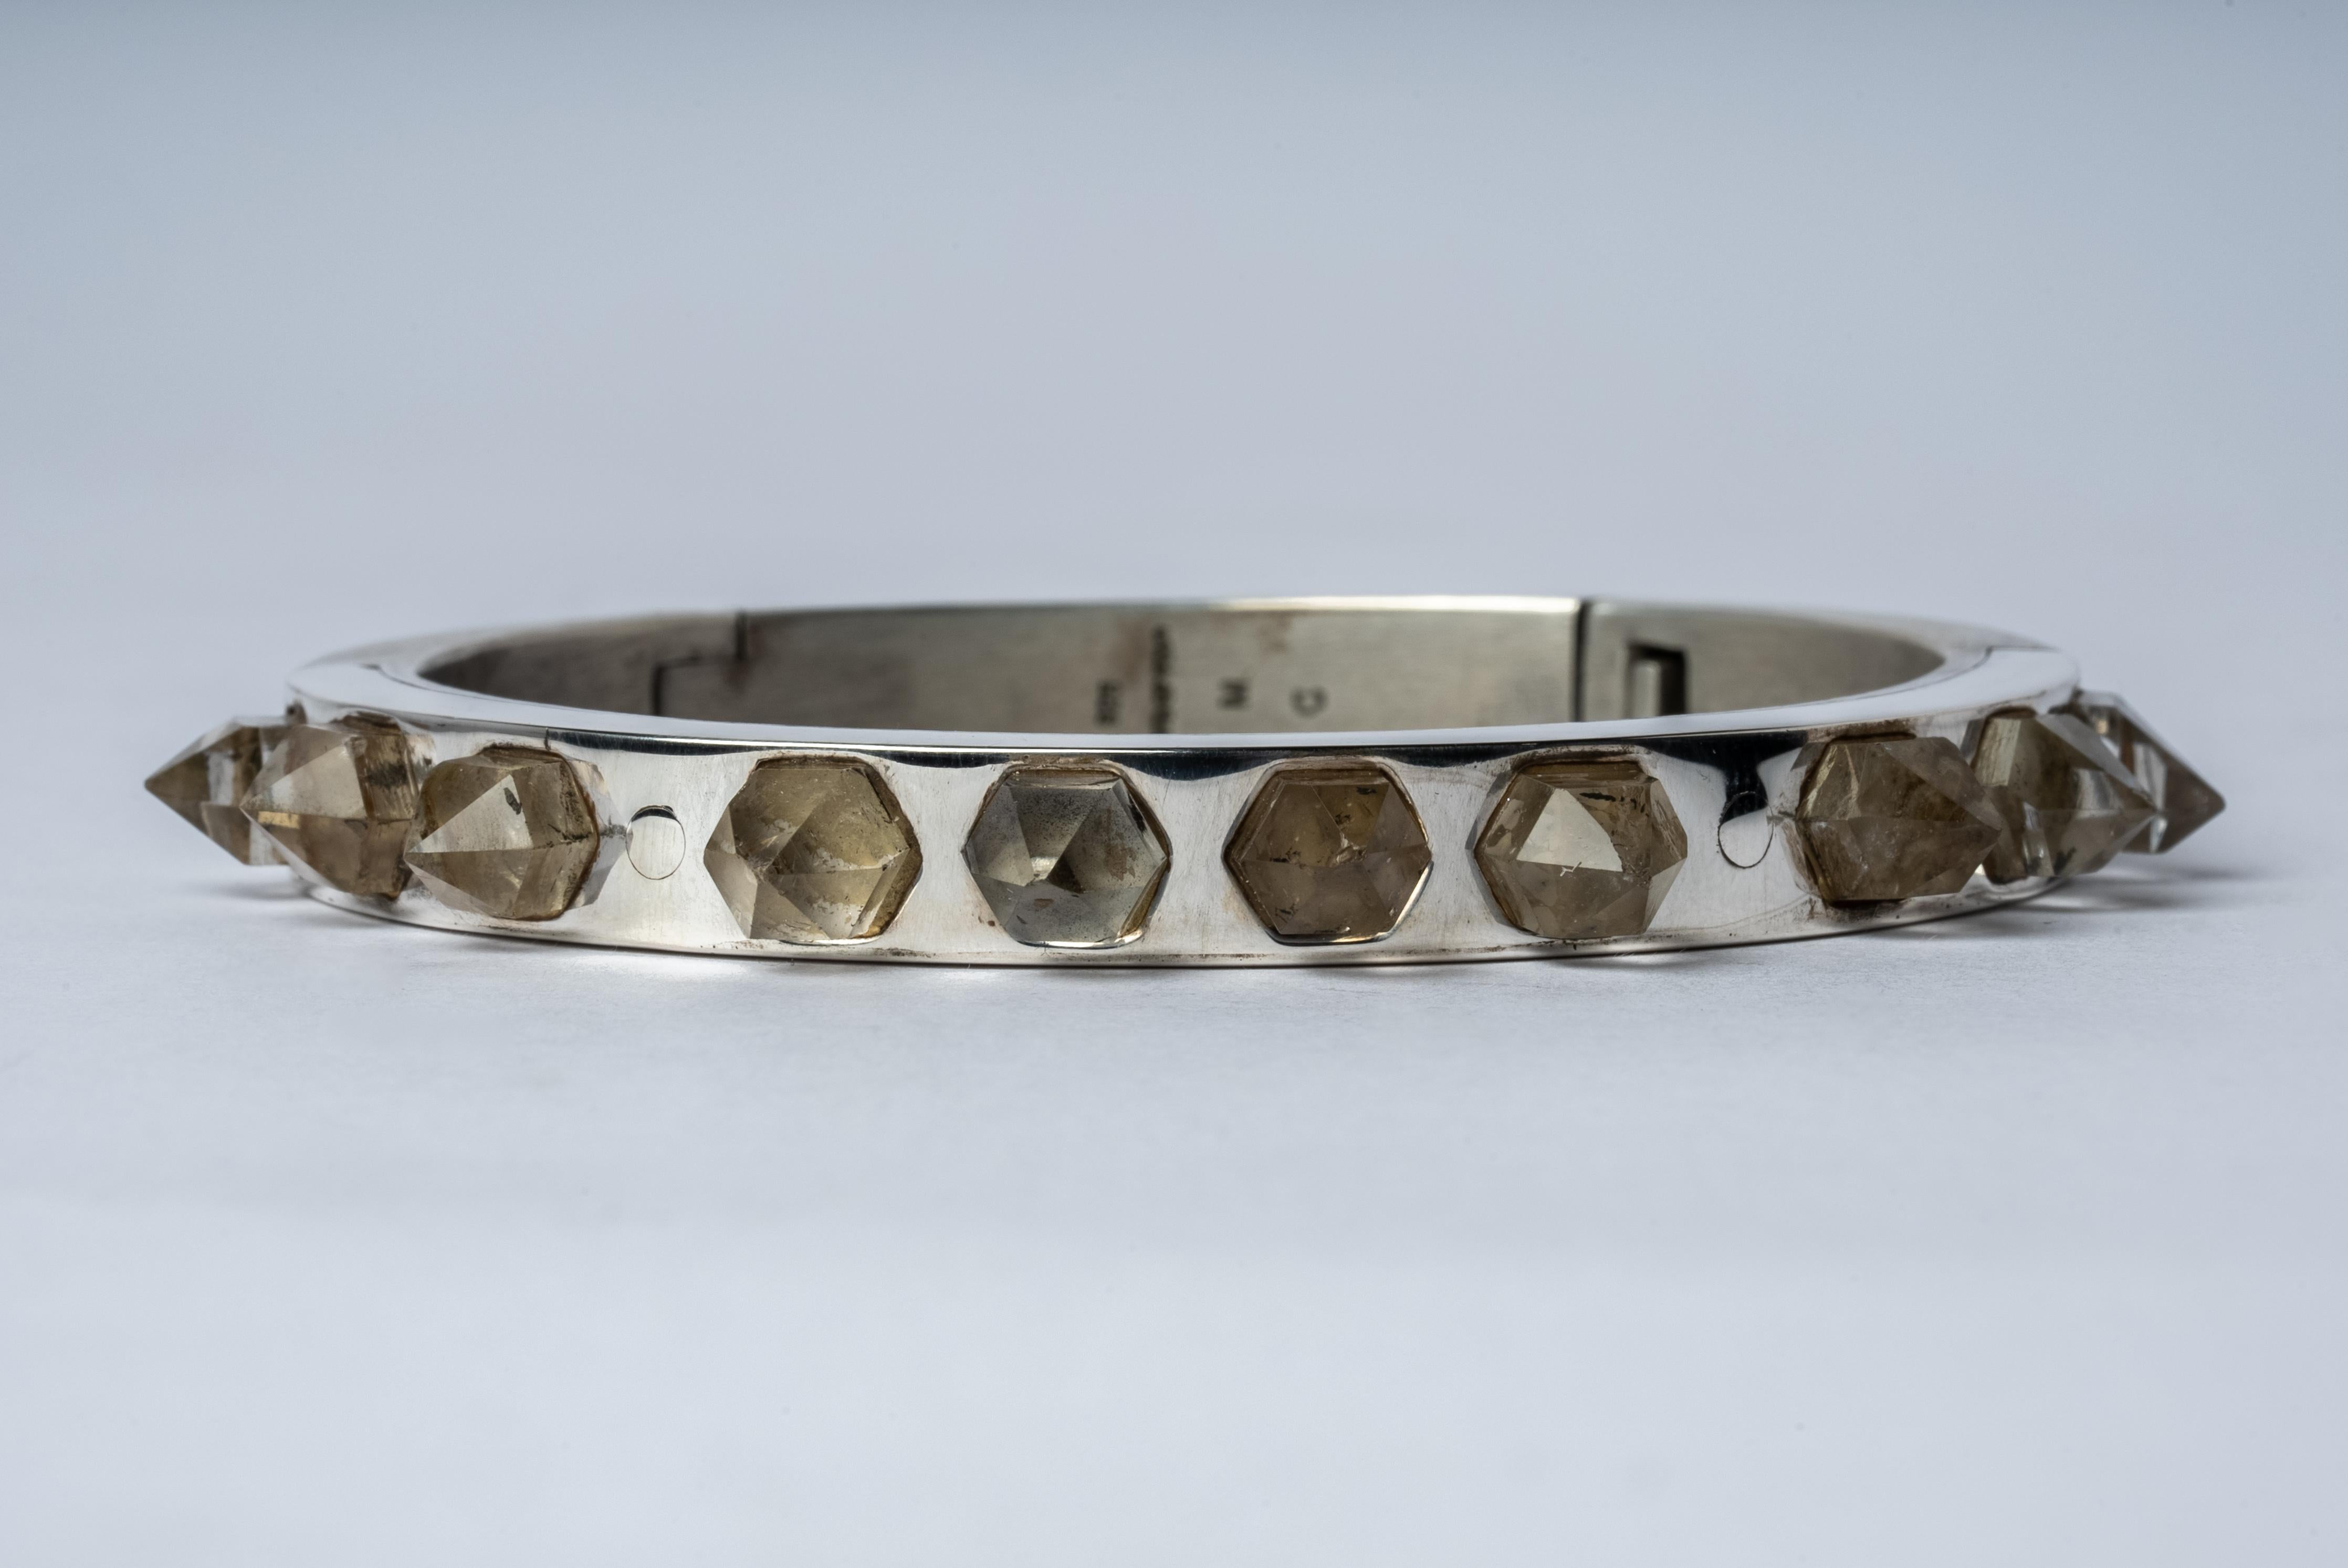 Sistema-Armband aus Sterlingsilber und Quarzkristallen mit doppelter Endung, superrein (wasserklar). Der 